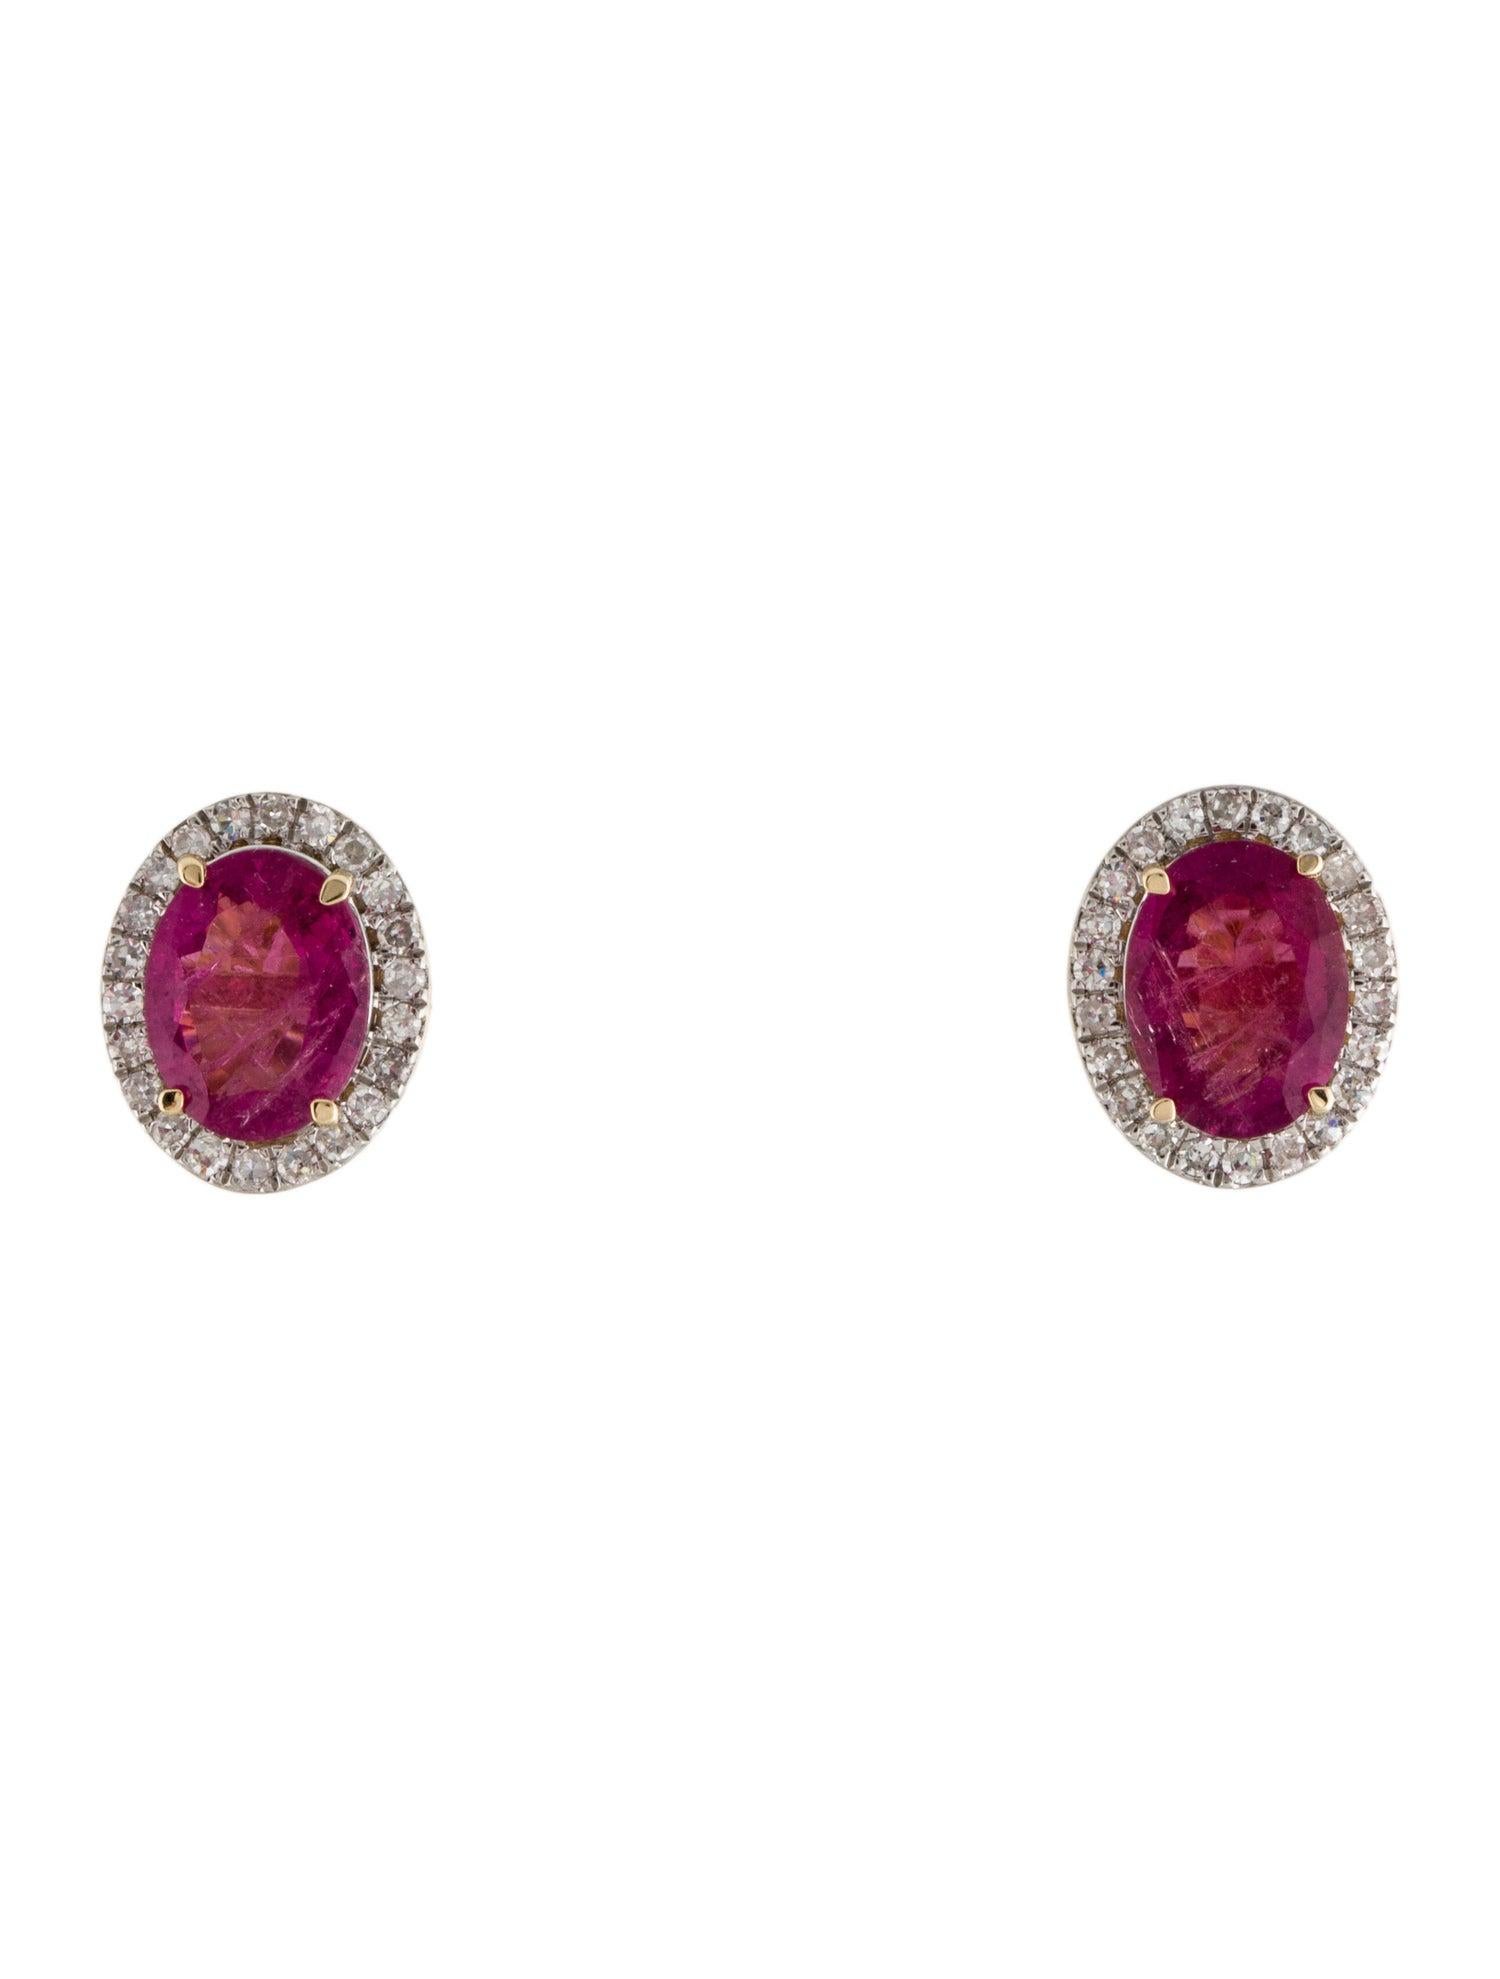 Erhöhen Sie Ihre Eleganz mit unseren Rubellit- und Diamant-Ohrringen 'Rose Radiance' aus der Kollektion Vibrant Pink Treasures. Diese exquisiten Ohrringe sind ein Beweis für die fesselnde Anziehungskraft des Rubellit-Edelsteins, der an die